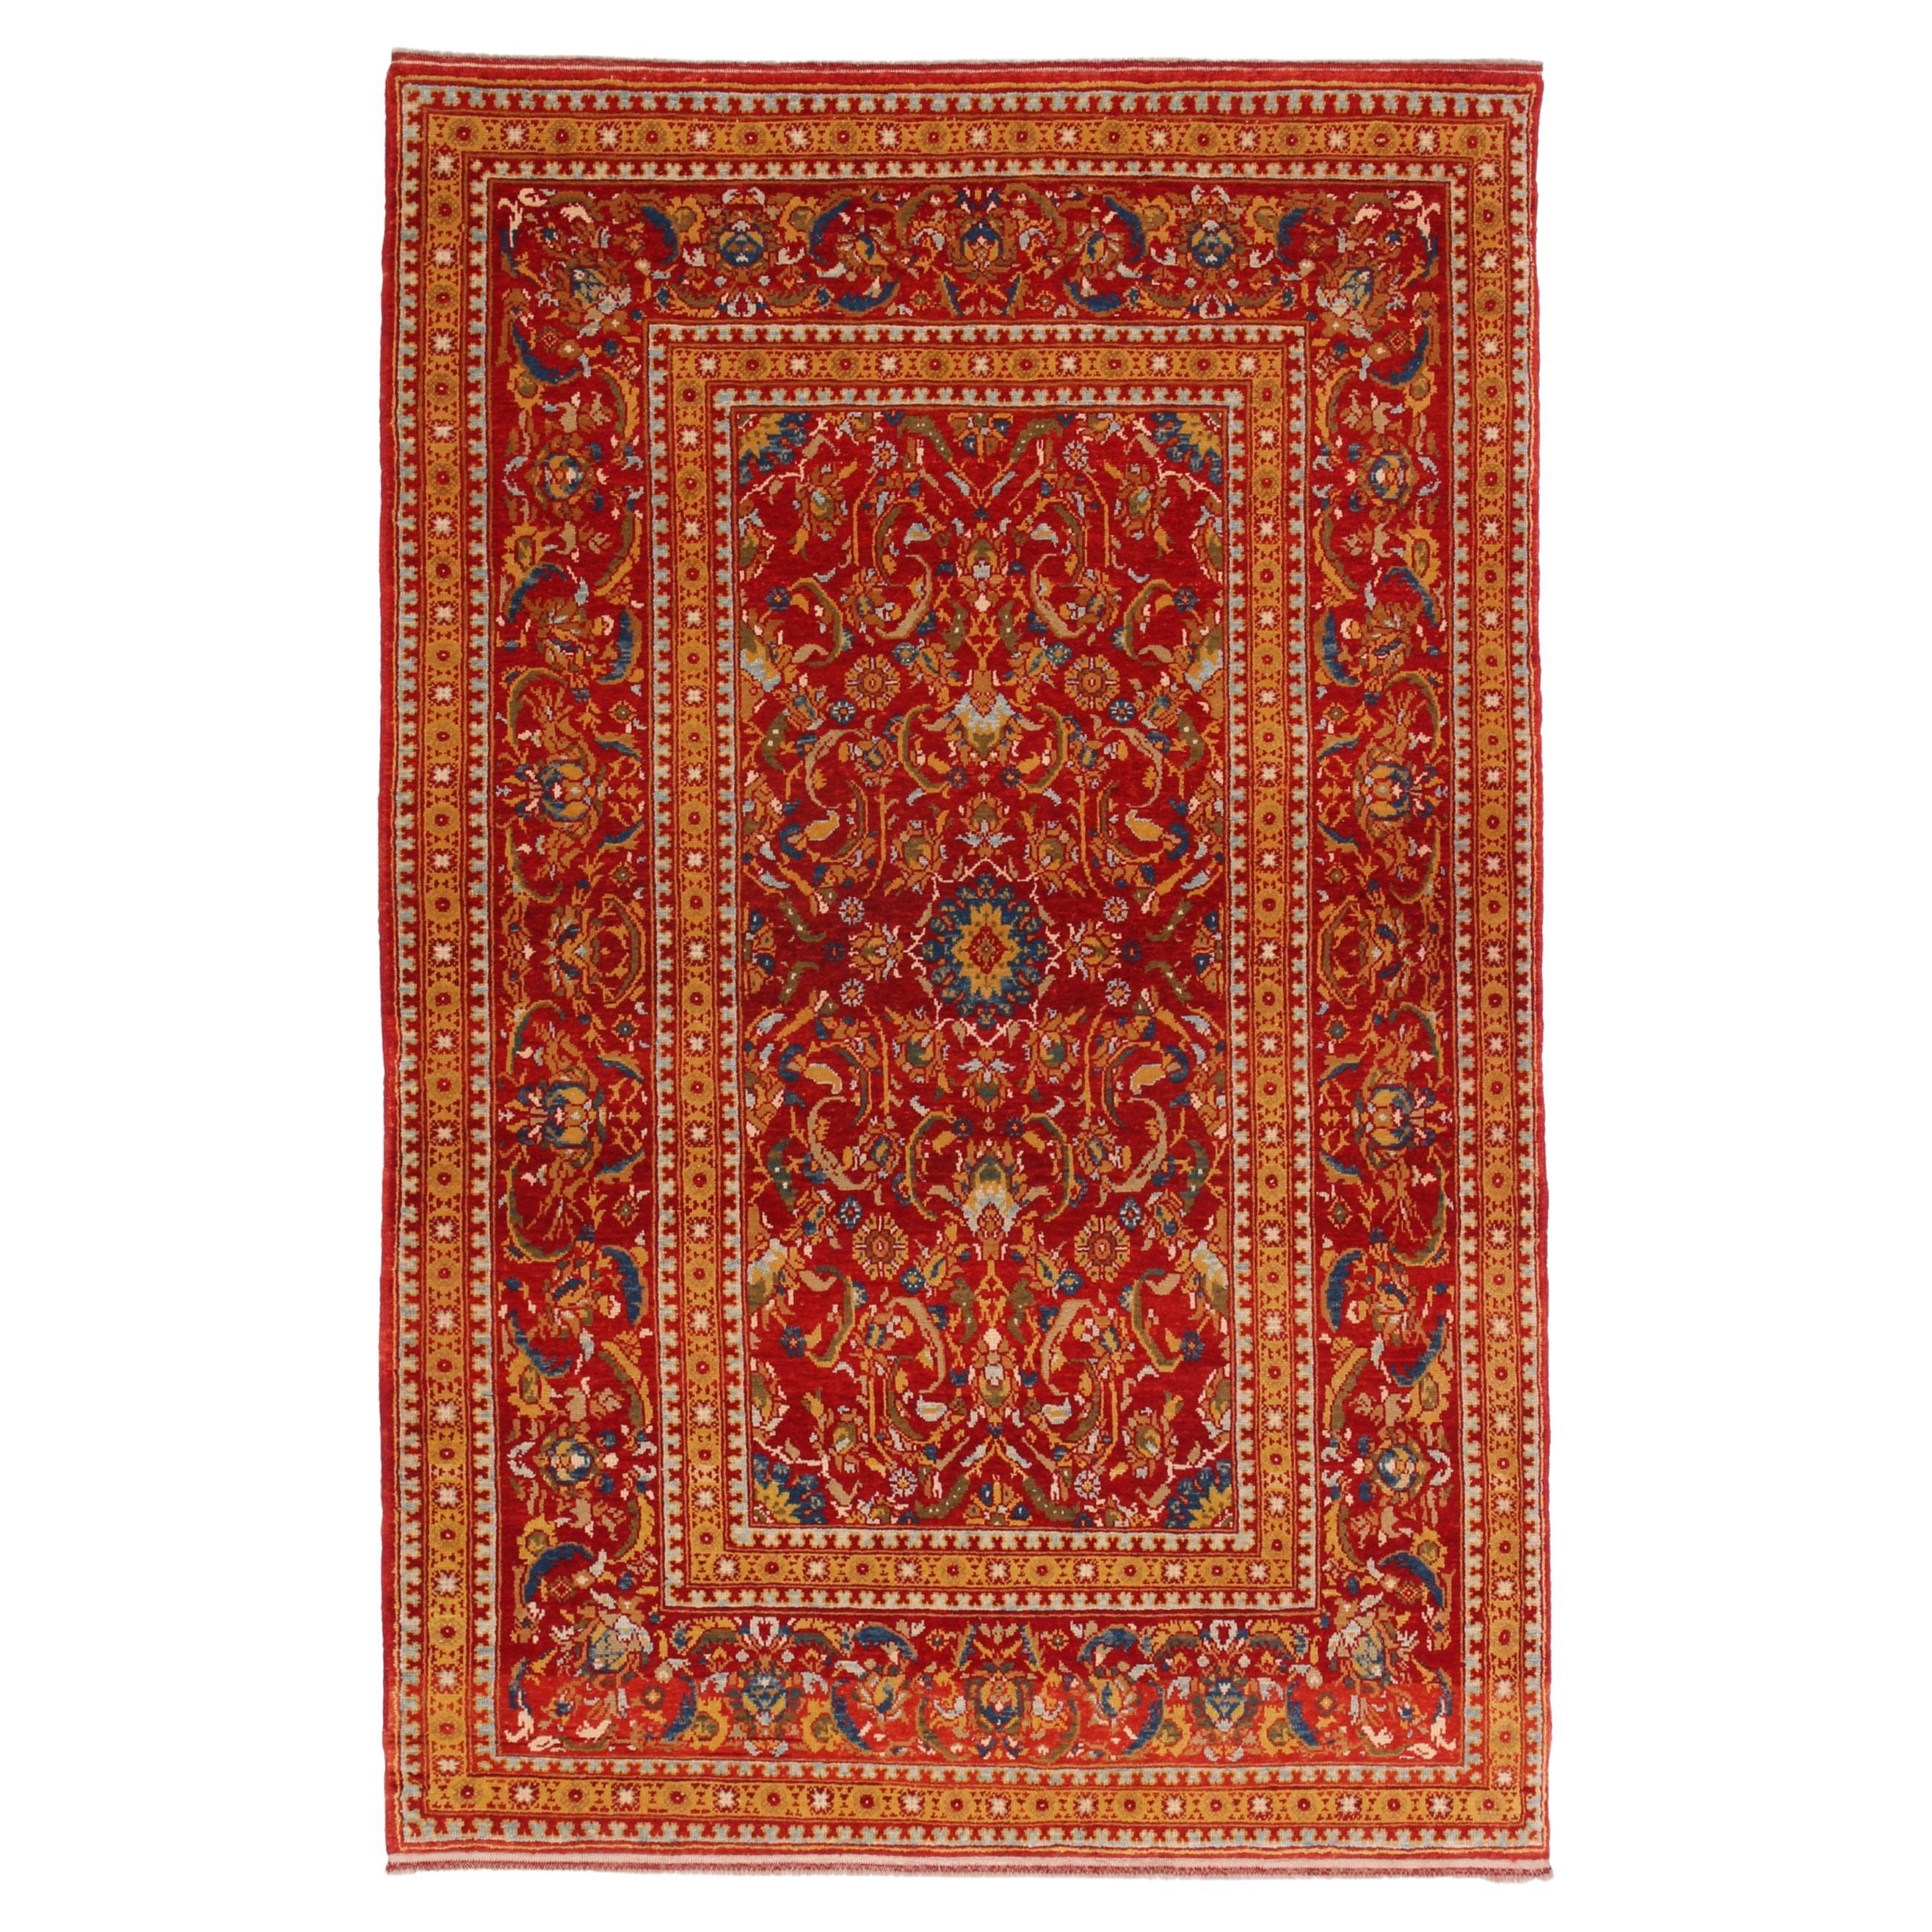 Ararat Teppich Türkischer Hofgewerbe-Teppich Ottoman Revival Teppich Naturfarben